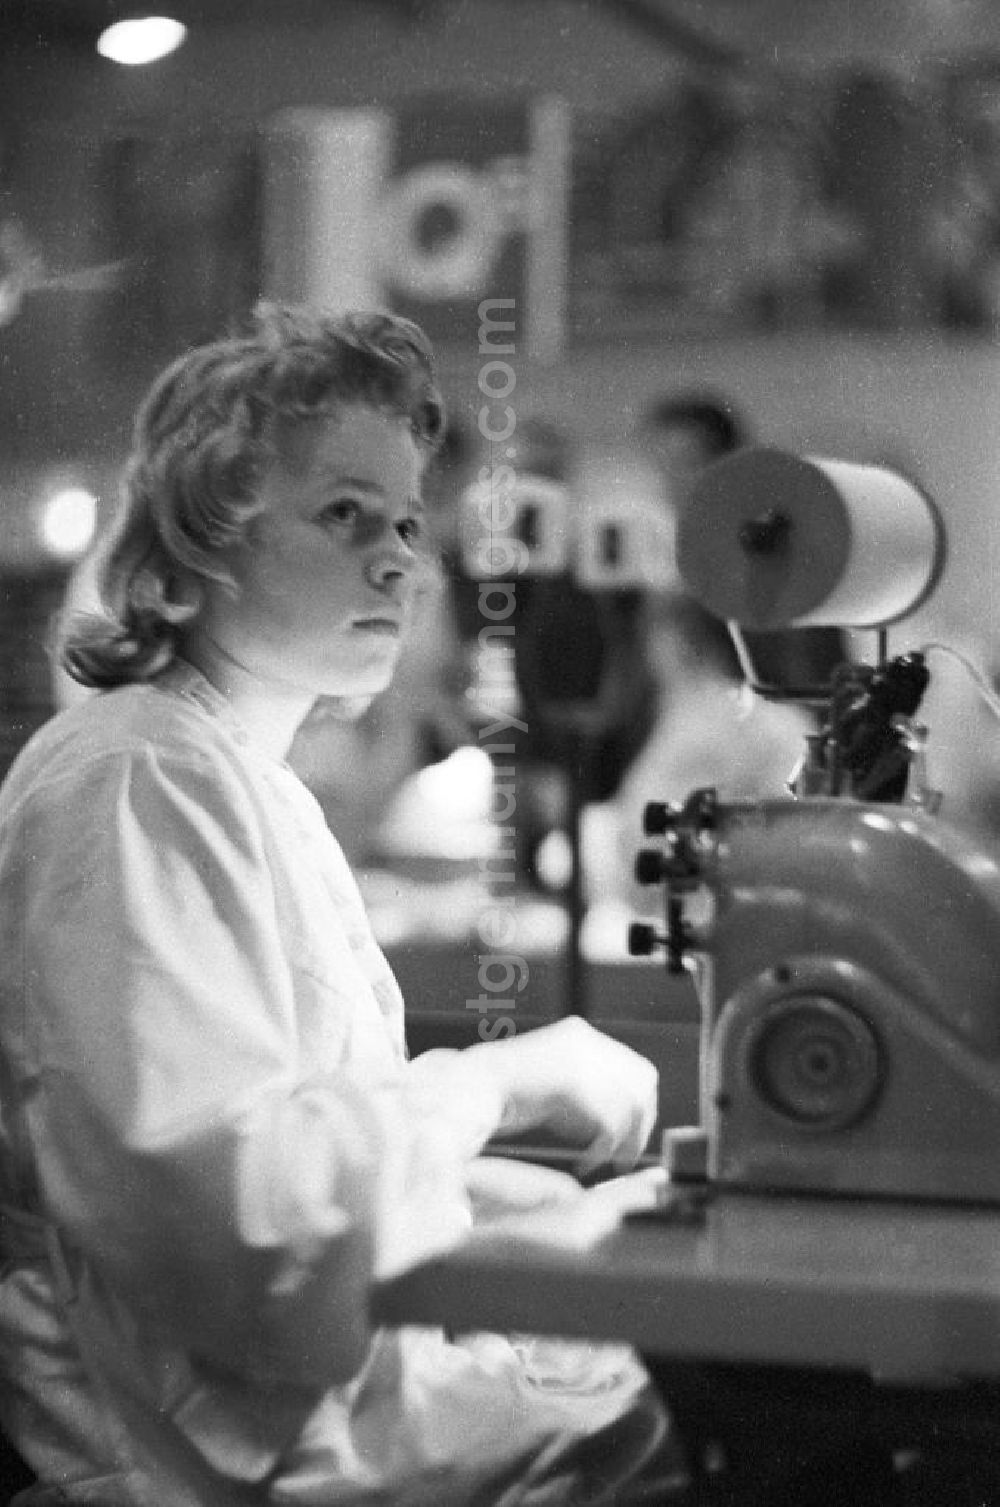 GDR photo archive: Leipzig - Eine Frau präsentiert auf der Lehrschau der Standardisierung eine Nähmaschine. Die Lehrschau der Standardisierung, als zweite Großveranstaltung nach der Konferenz der Standardisierung im Februar 1959, sollte Produktionsverfahren in der Wirtschaft verbessern. Bestmögliche Qualität nach Vorlage!